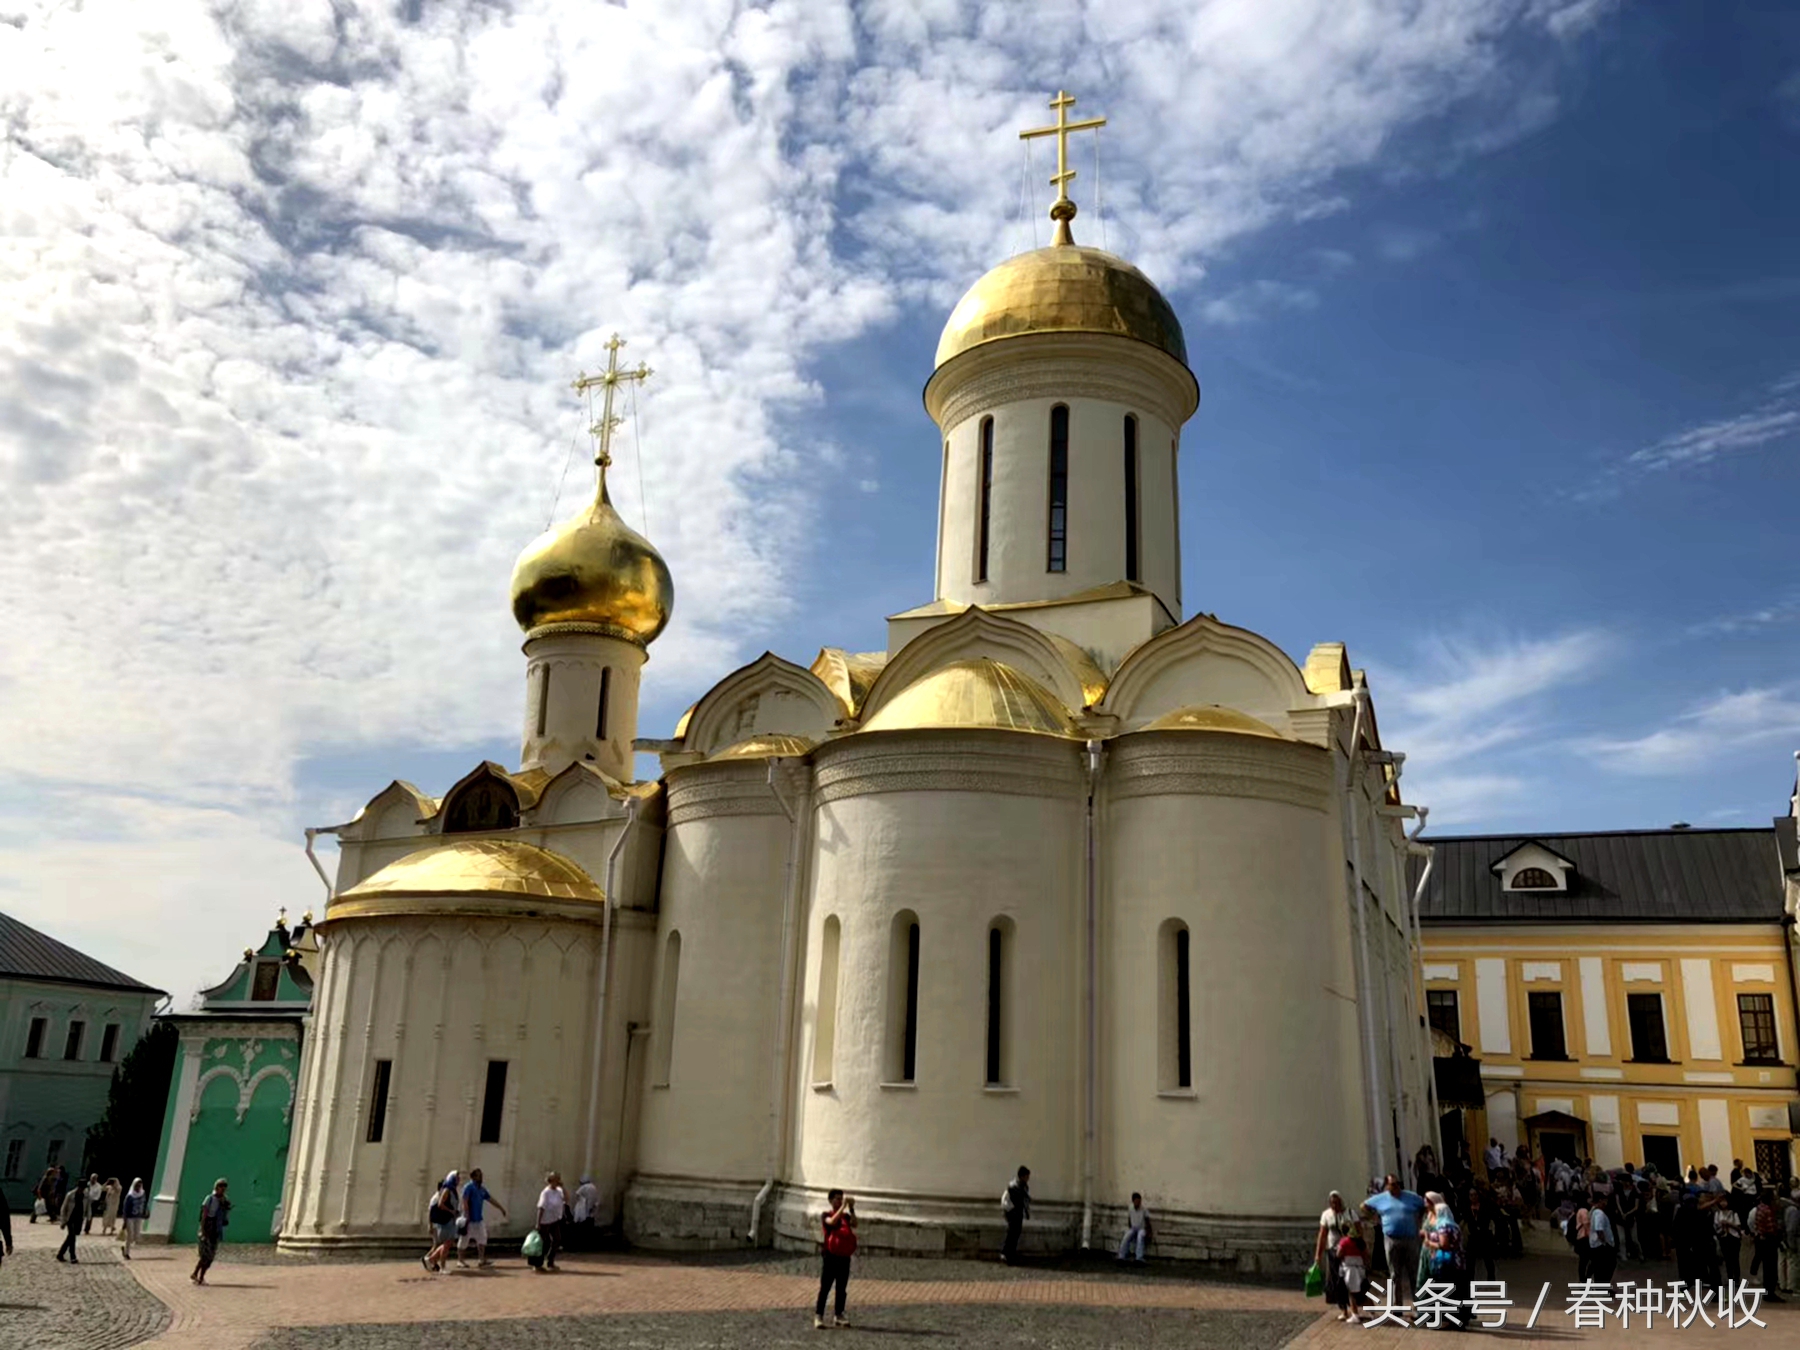 谢尔盖耶夫小镇是莫斯科乃至东欧最美的小镇！给人以心灵的震撼